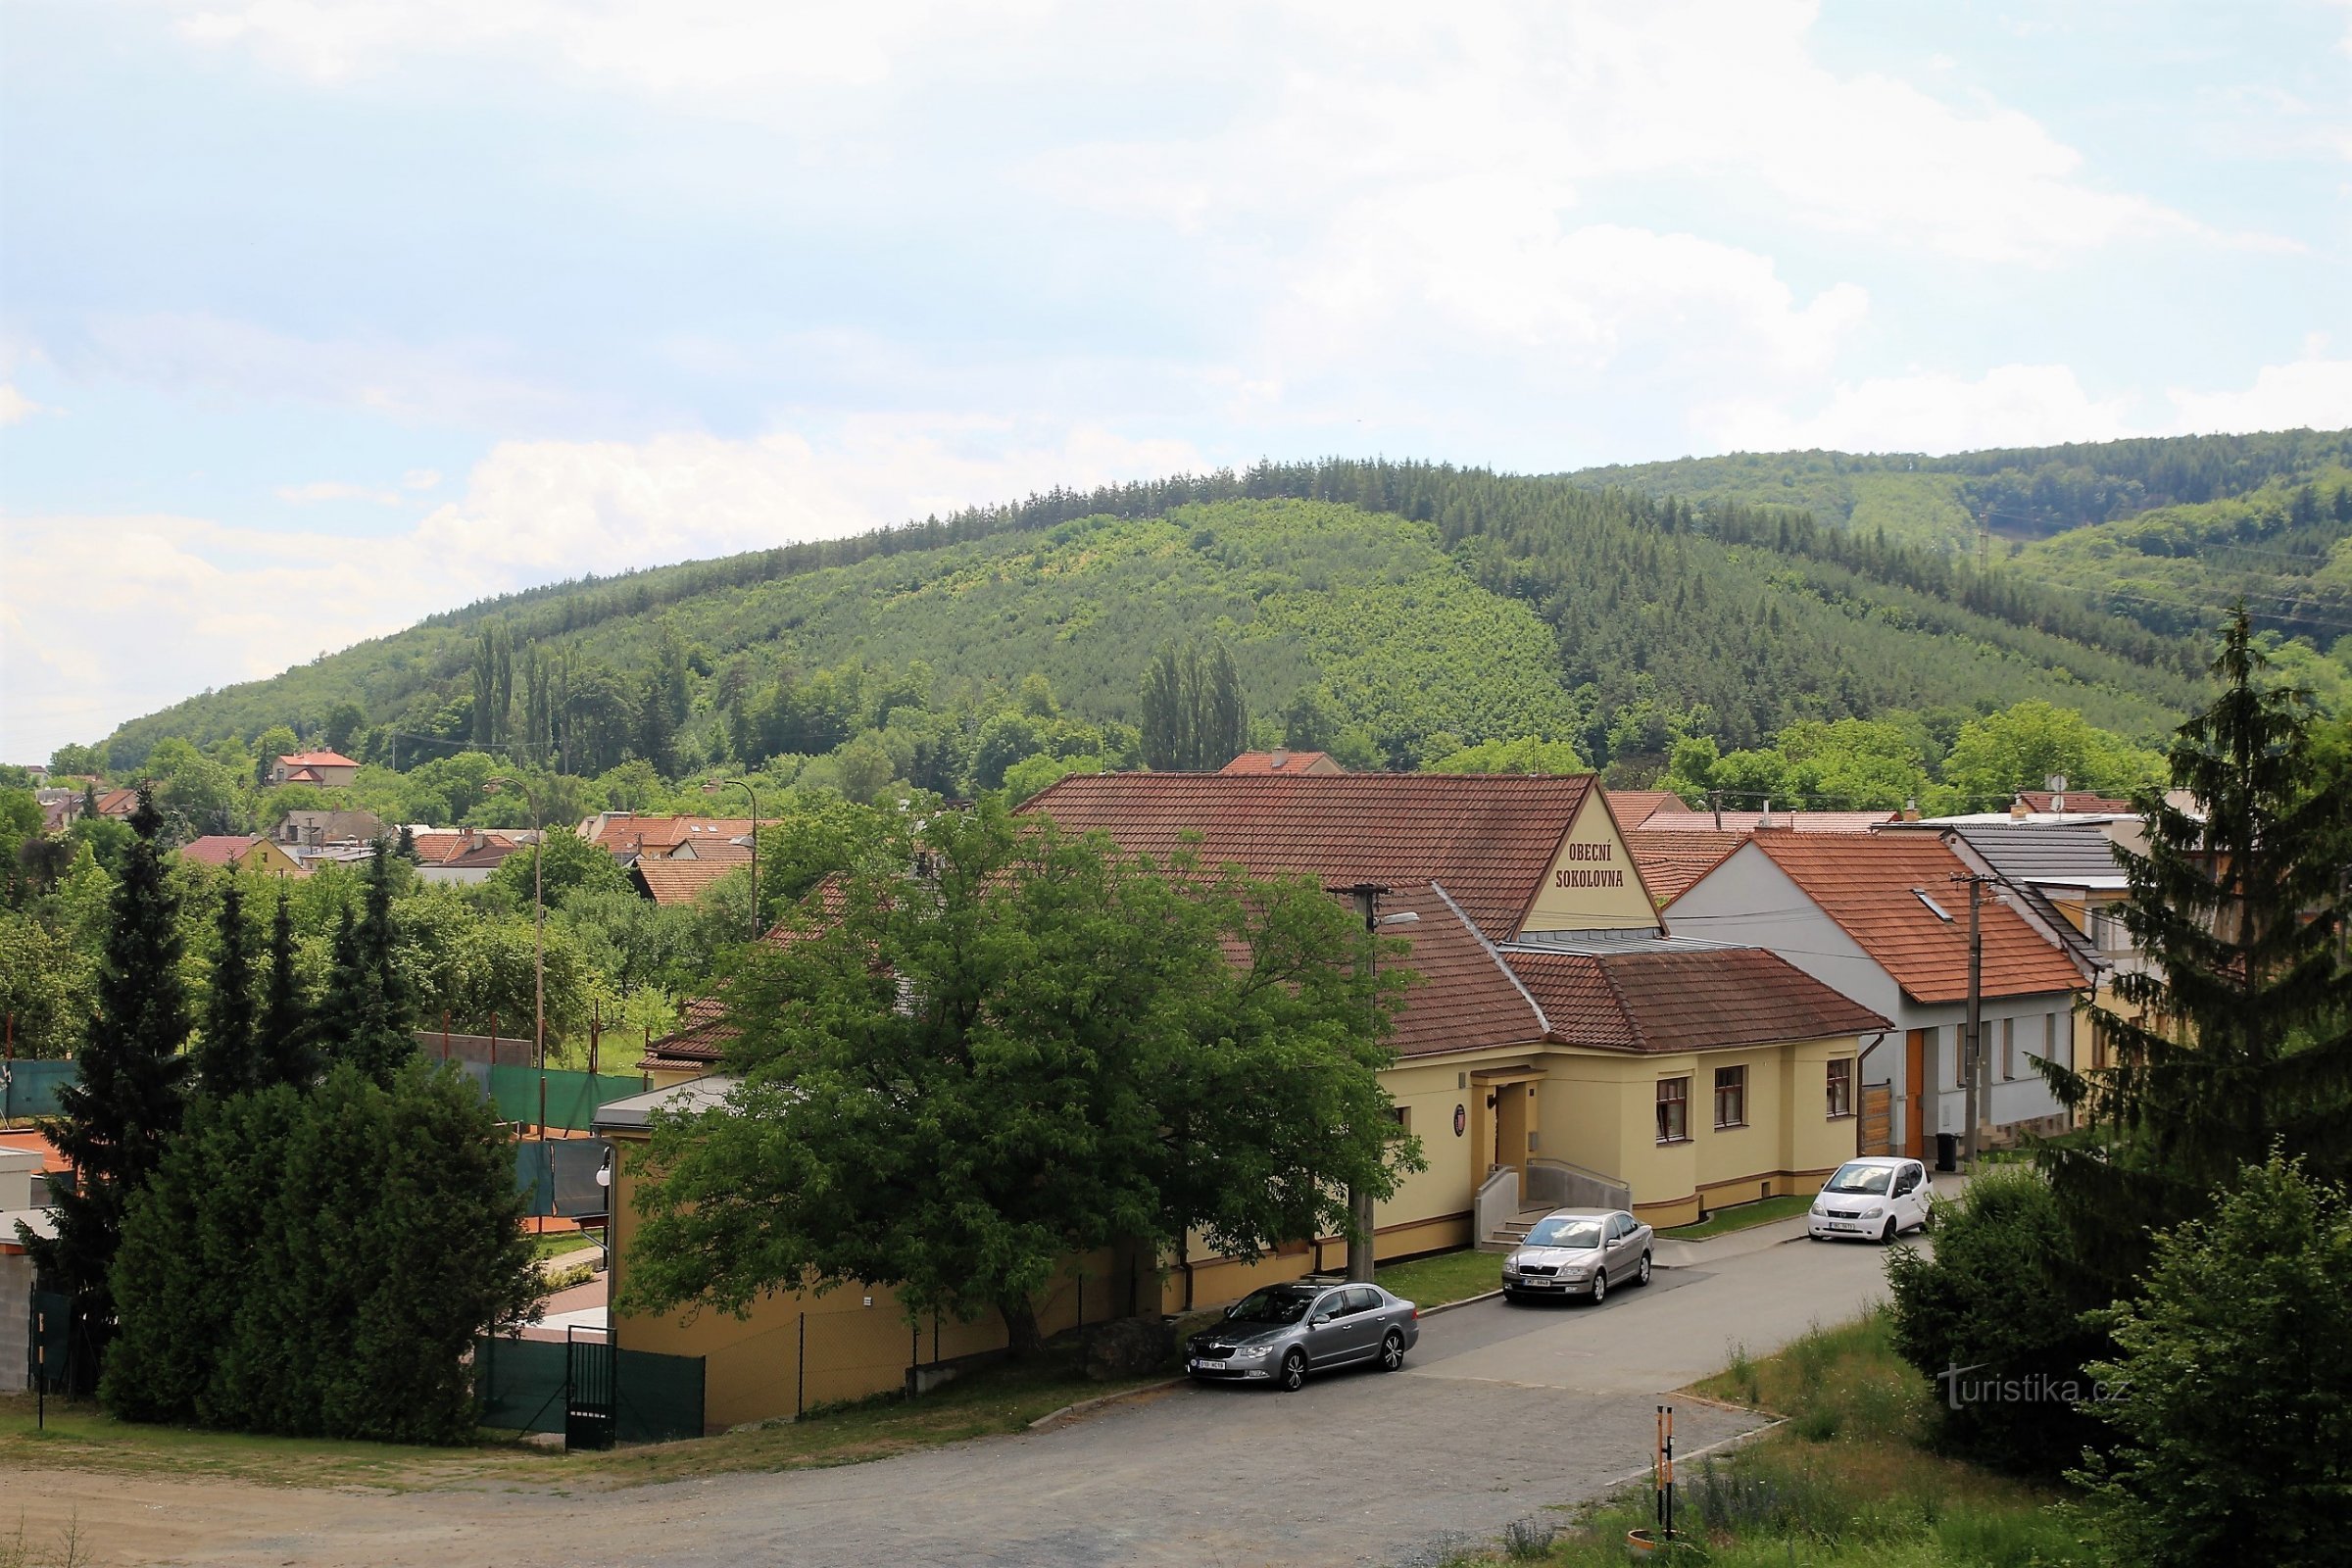 Ostrá hora se ridică direct deasupra satului Česká, în spatele acestuia domină creasta principală a Baby